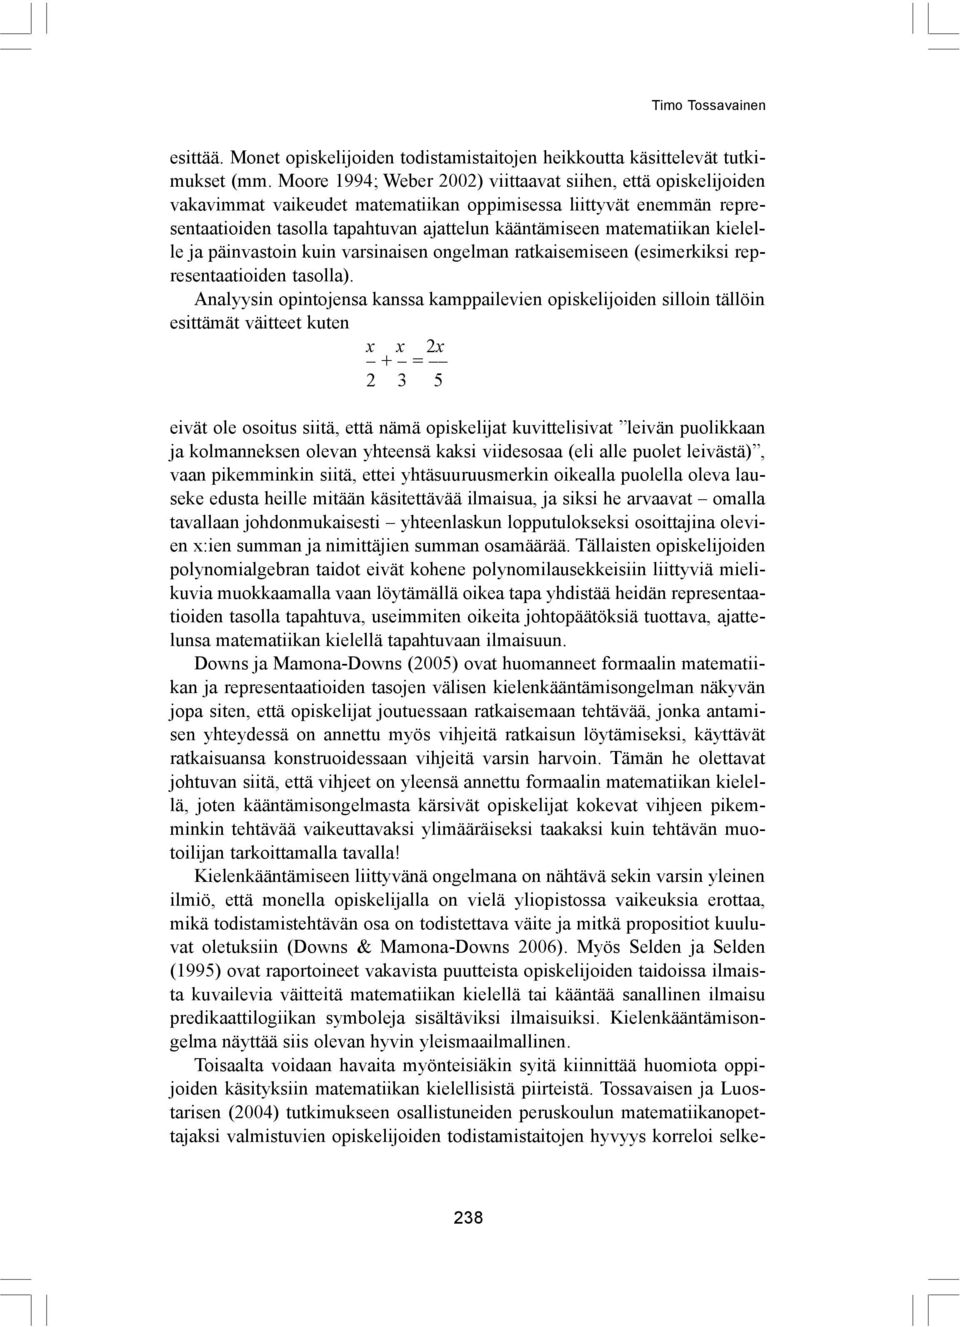 matematiikan kielelle ja päinvastoin kuin varsinaisen ongelman ratkaisemiseen (esimerkiksi representaatioiden tasolla).